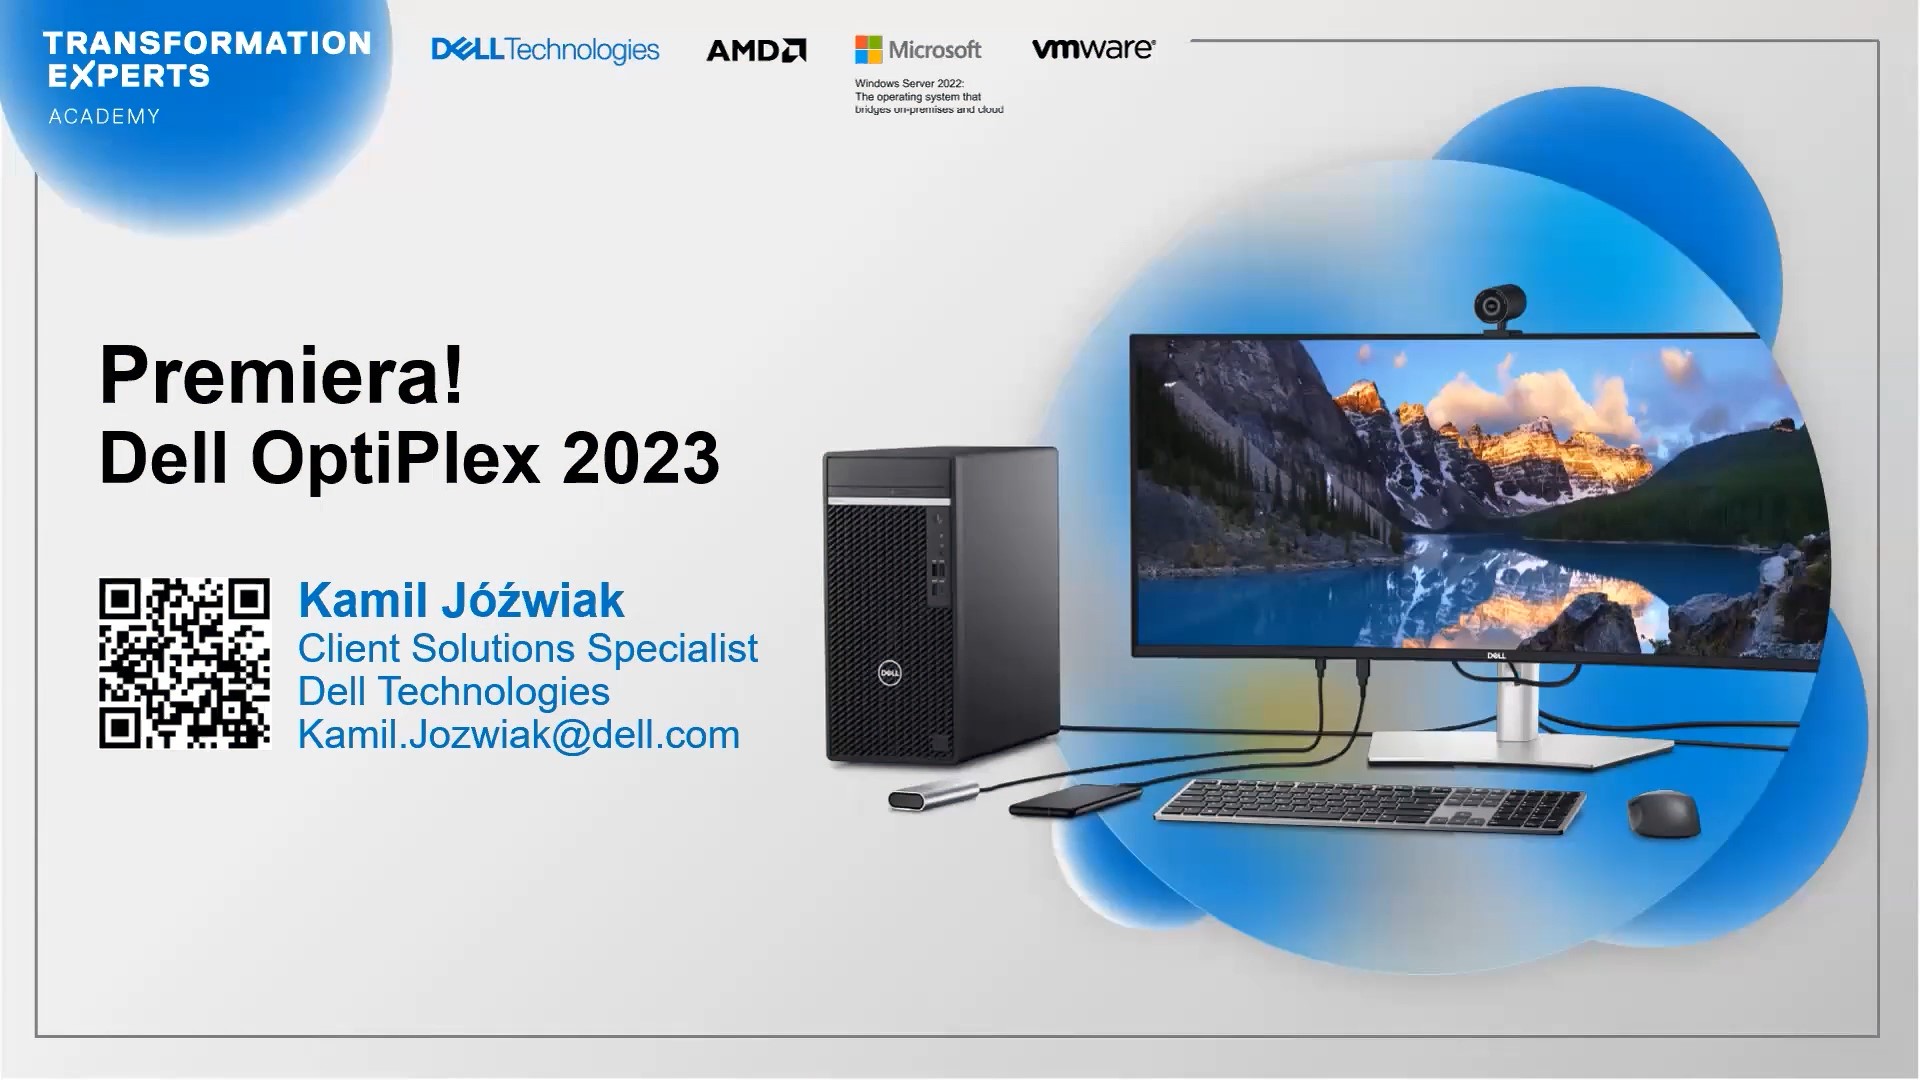 Premiera! Dell OptiPlex 2023